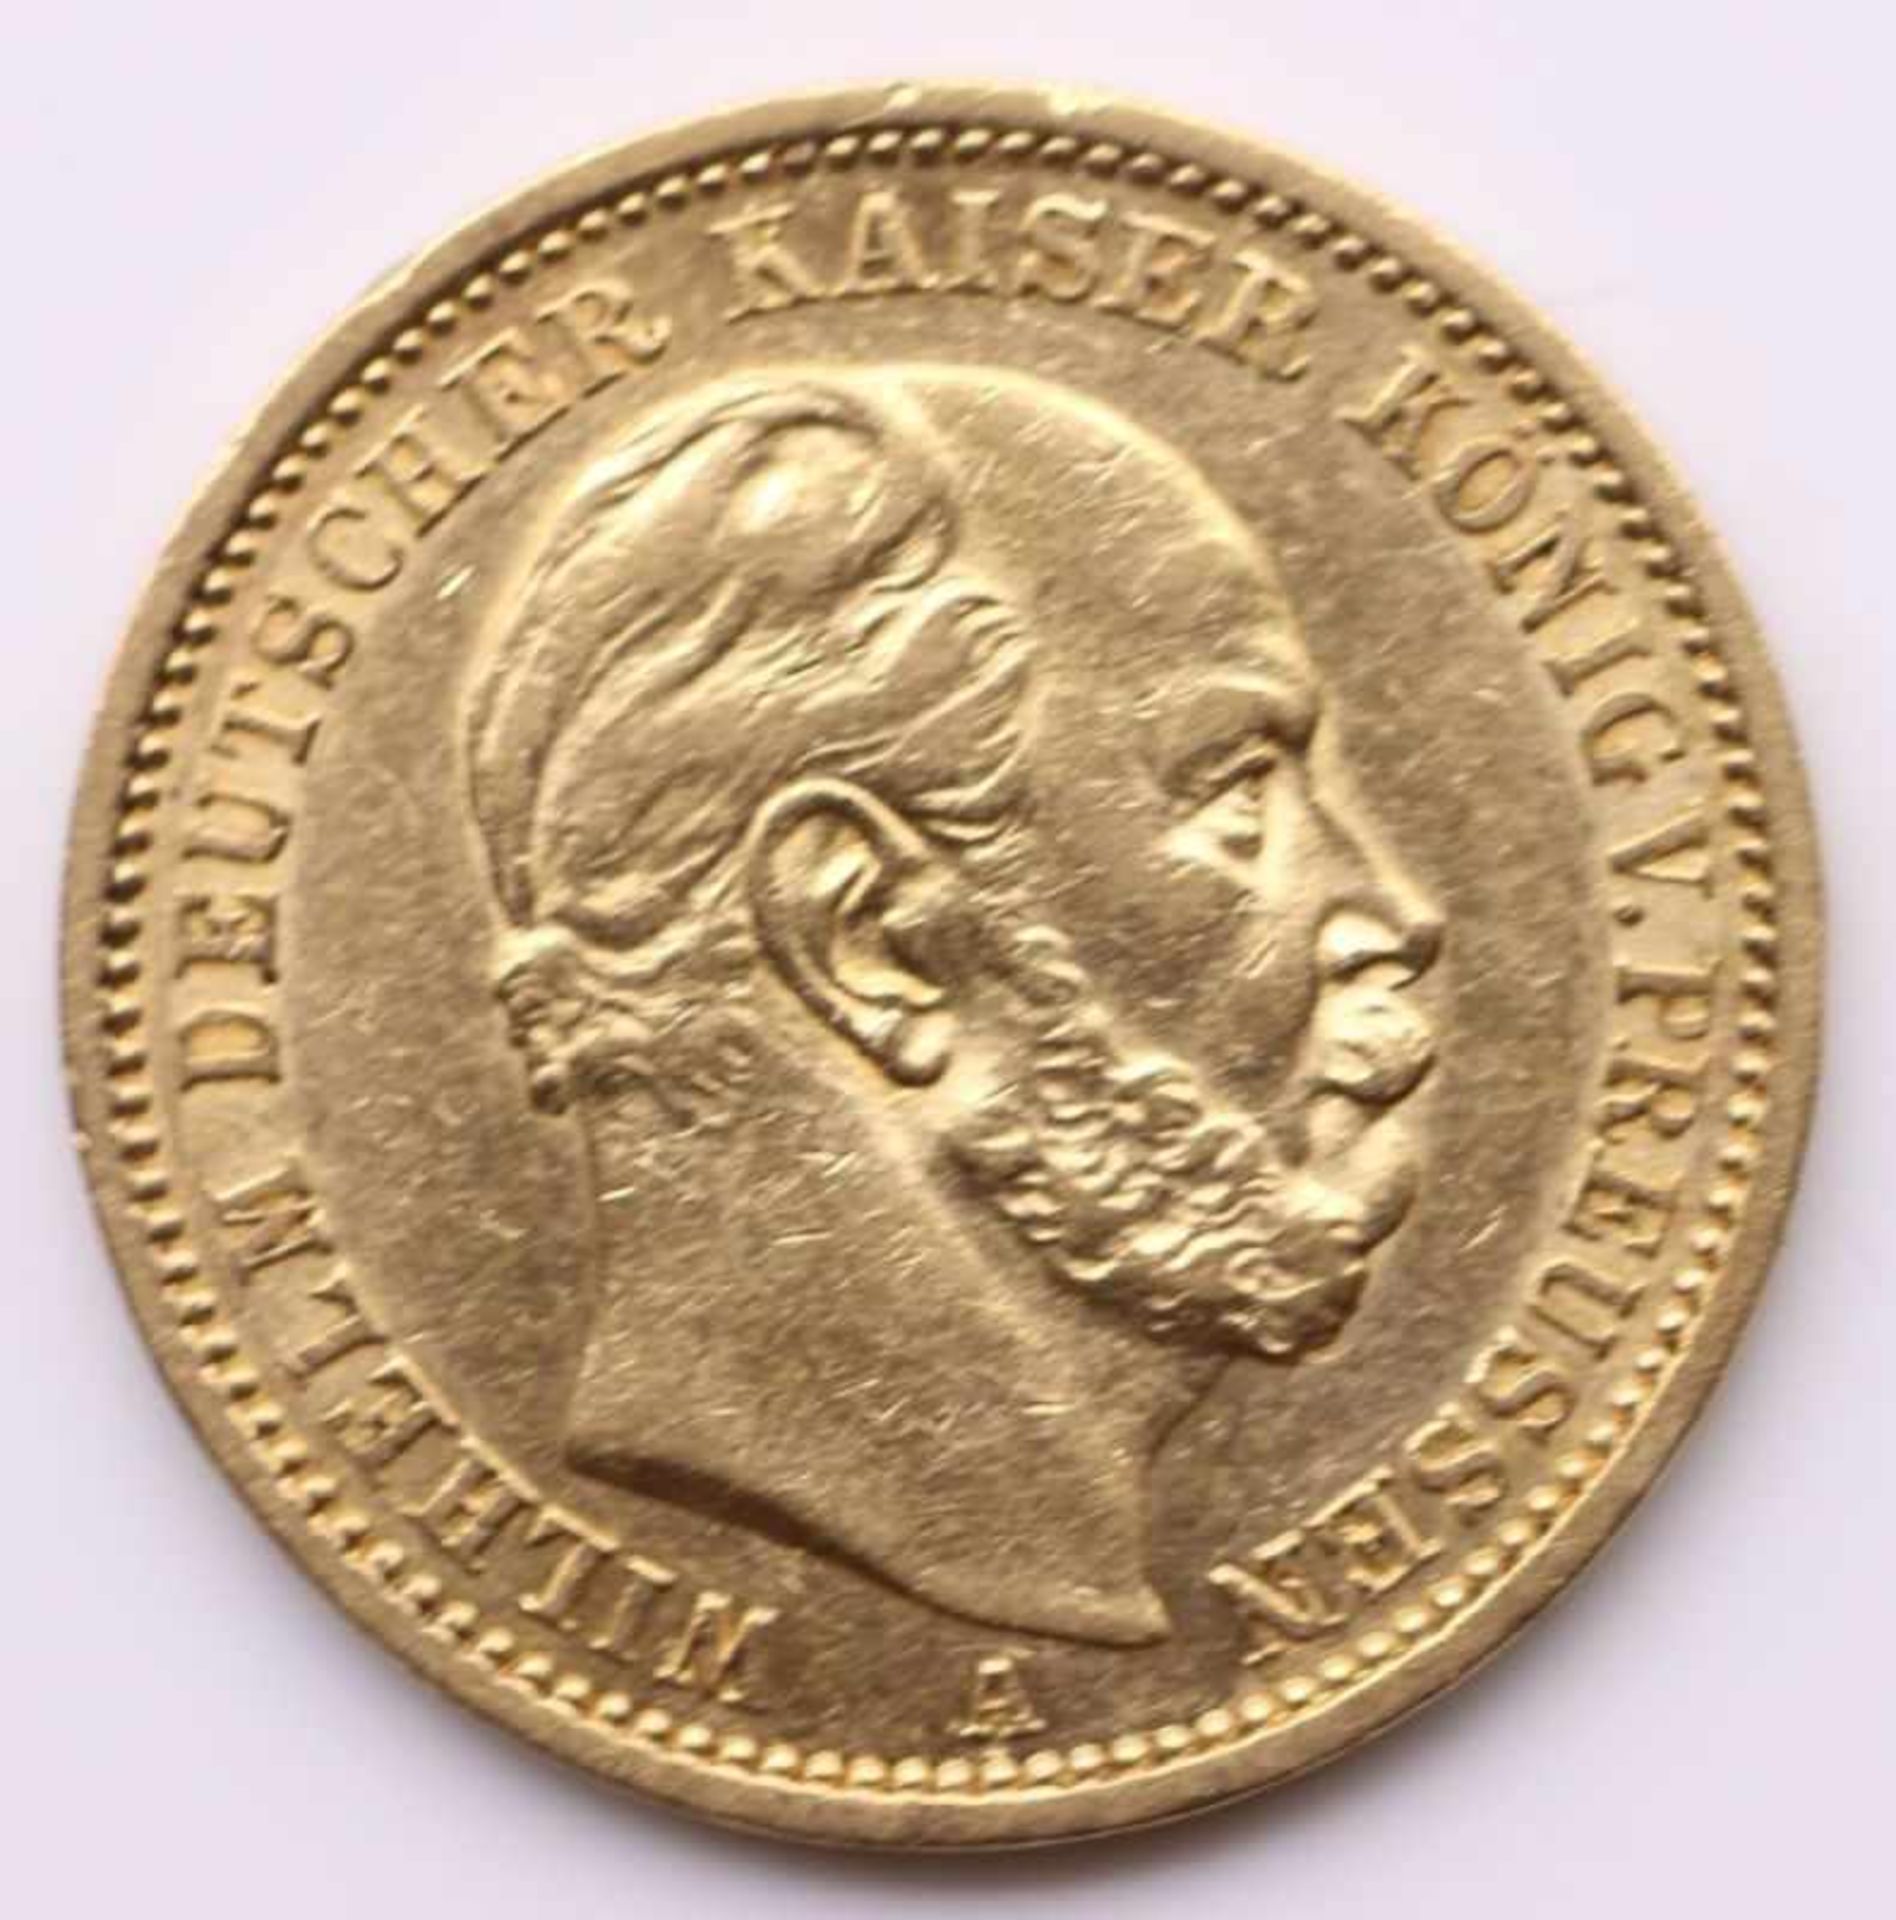 Goldmünze - 20 Mark Deutsches Reich 1876 A, Wilhelm deutscher Kaiser König von Preussen, ca. 7,95